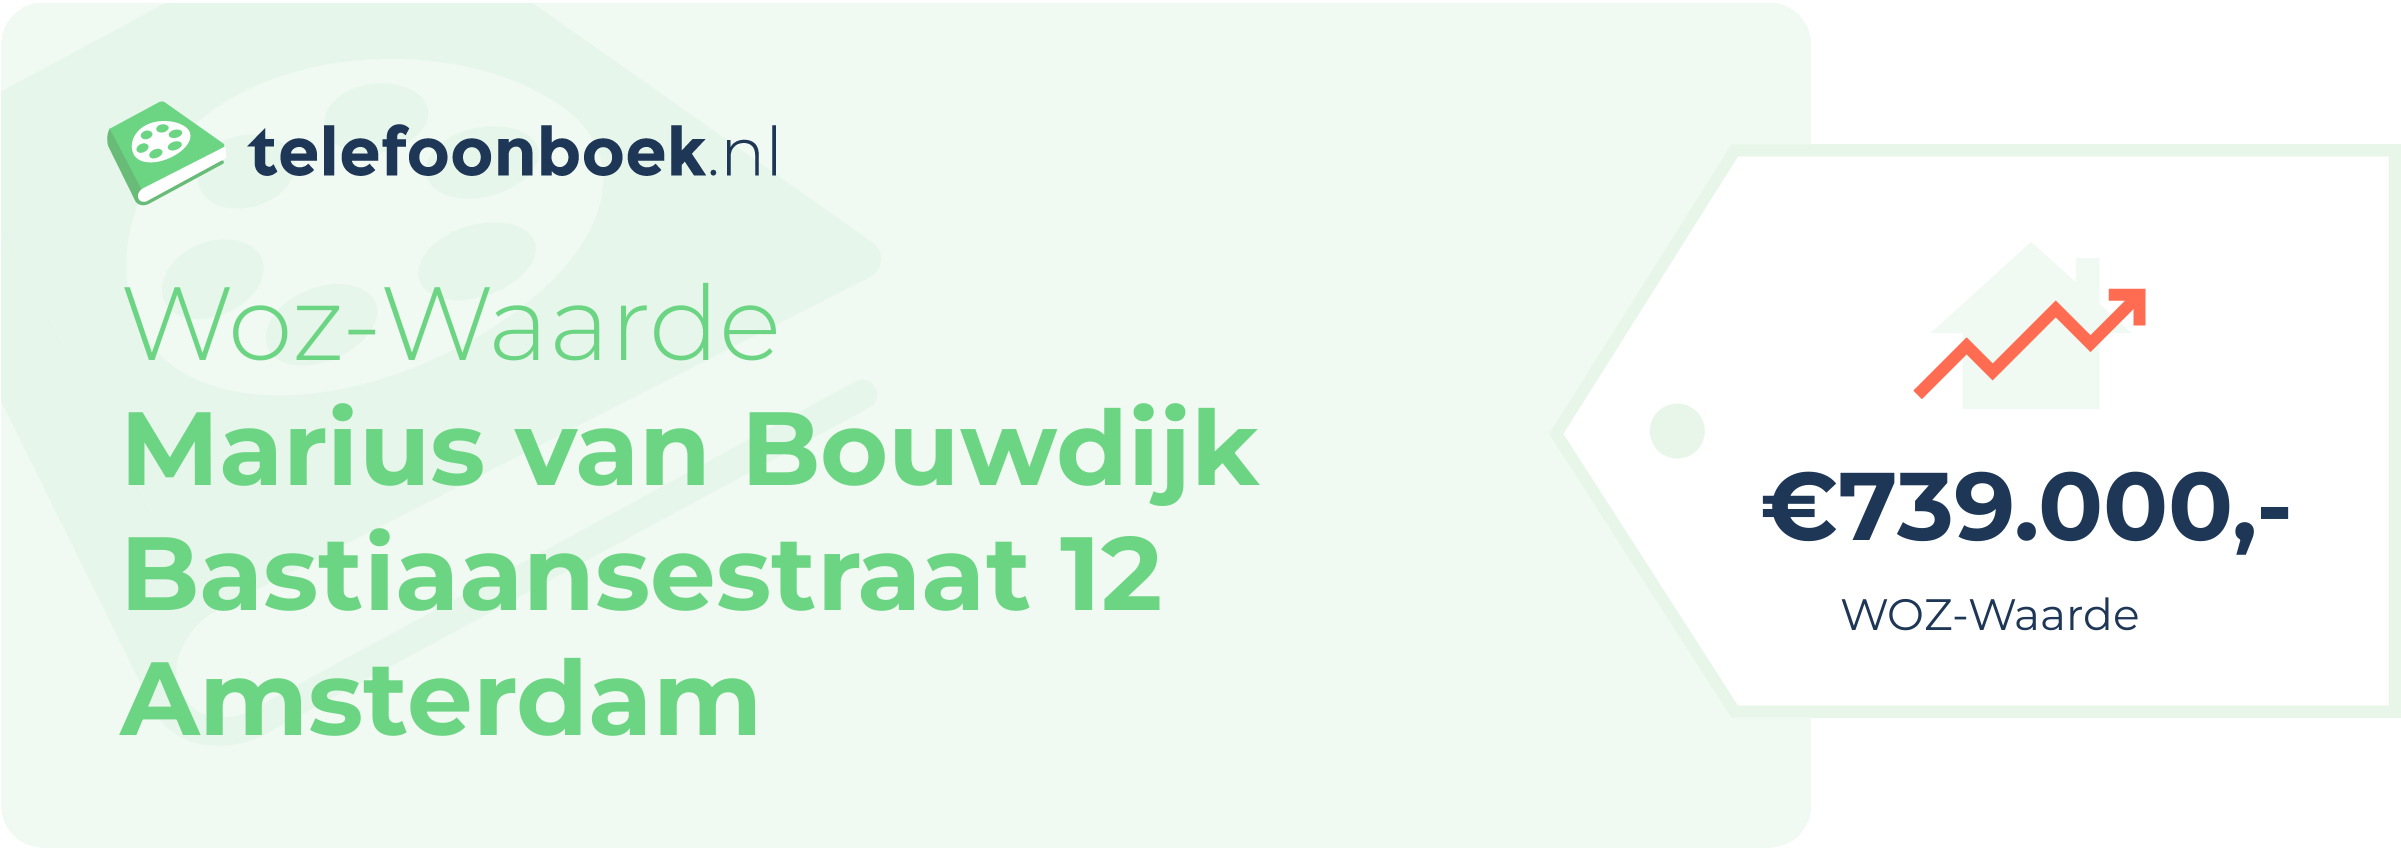 WOZ-waarde Marius Van Bouwdijk Bastiaansestraat 12 Amsterdam